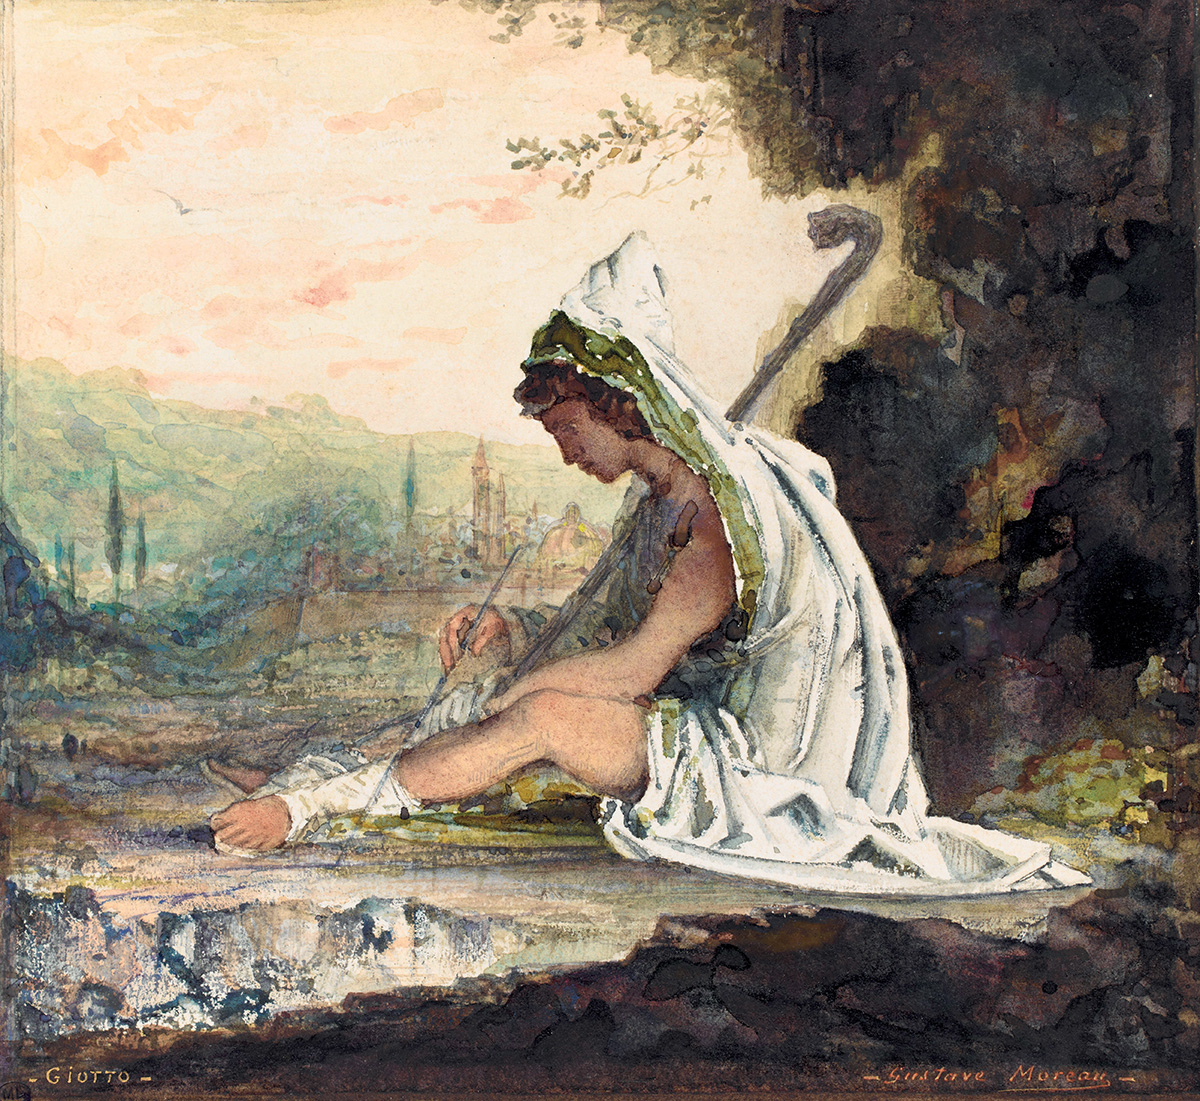 Gustave Moreau (1826-1898), Giotto, 1882. Aquarelle, gouache blanche, crayon graphite, peinture dorée sur papier, 20,3 x 22,1 cm. Photo service de presse. © RMN (musée d’Orsay) – T. Querrec